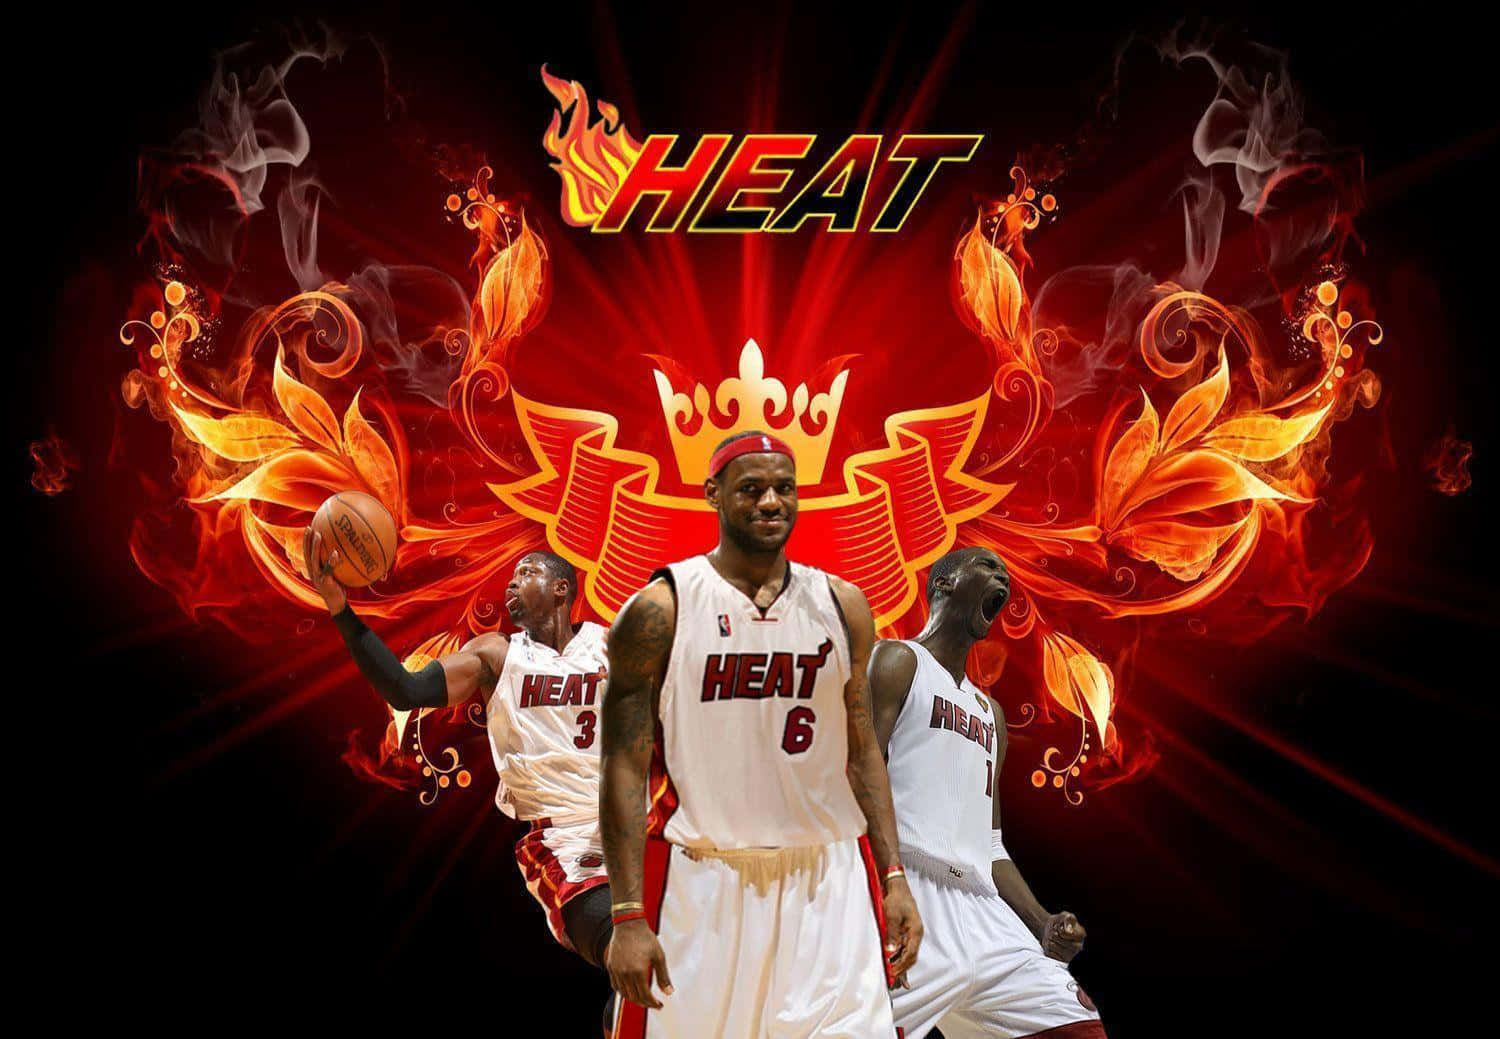 Amazing Miami Heat Three Kings Digital Art Wallpaper